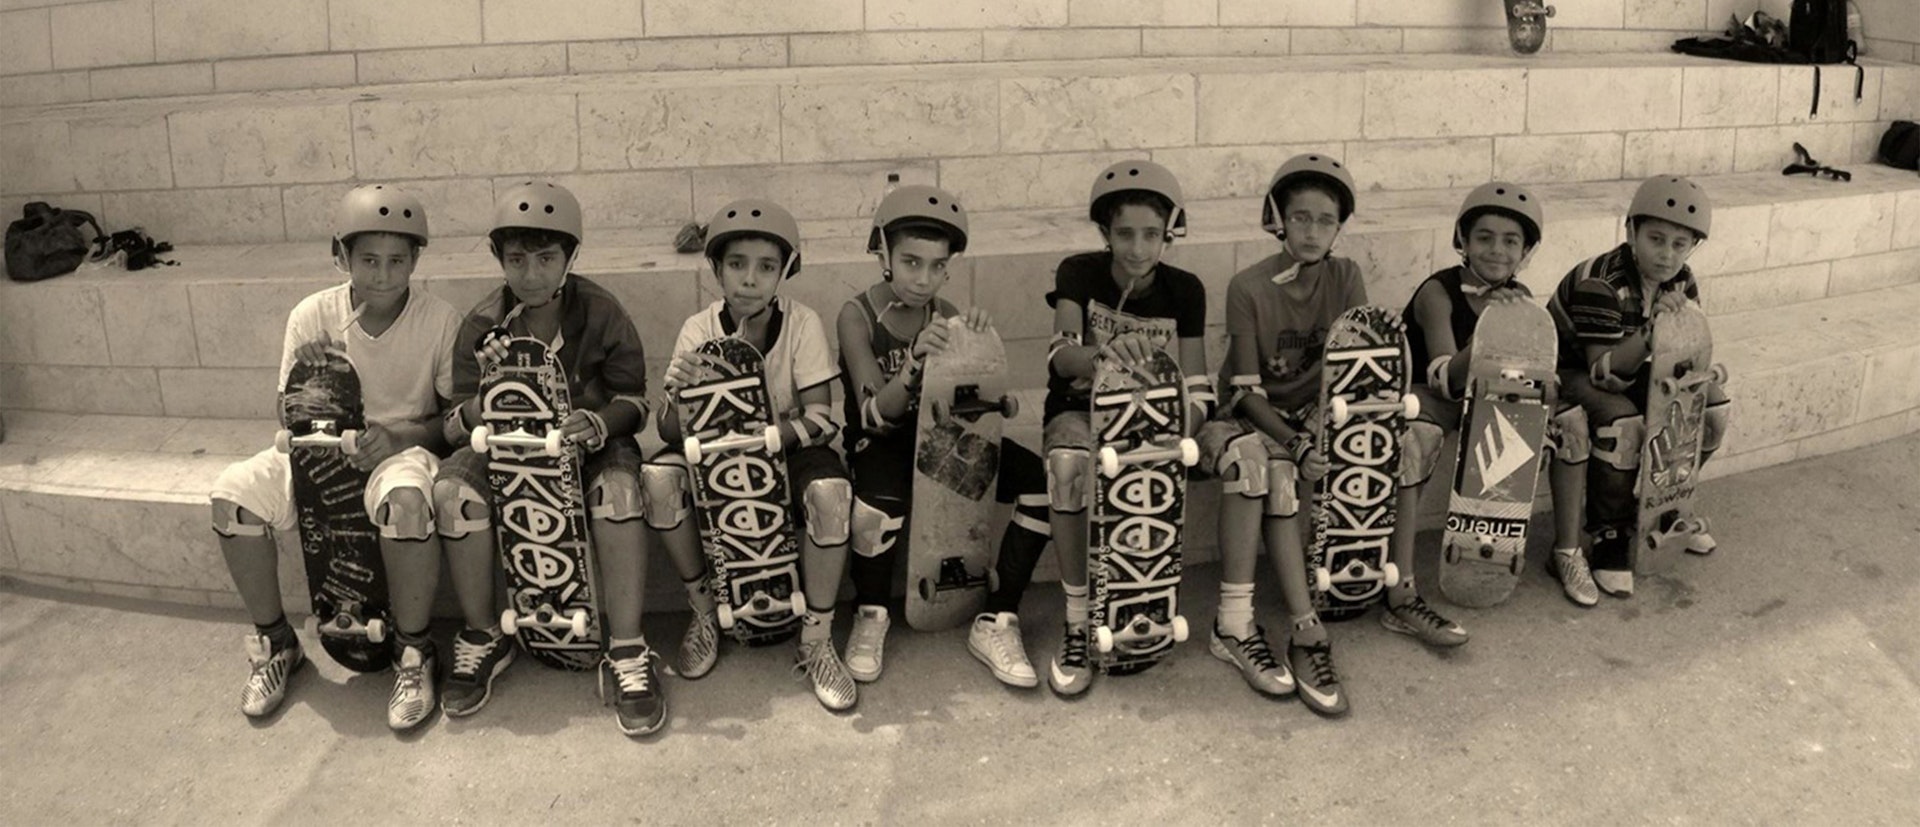 SkatePAL are spreading a love for skateboarding in Palestine